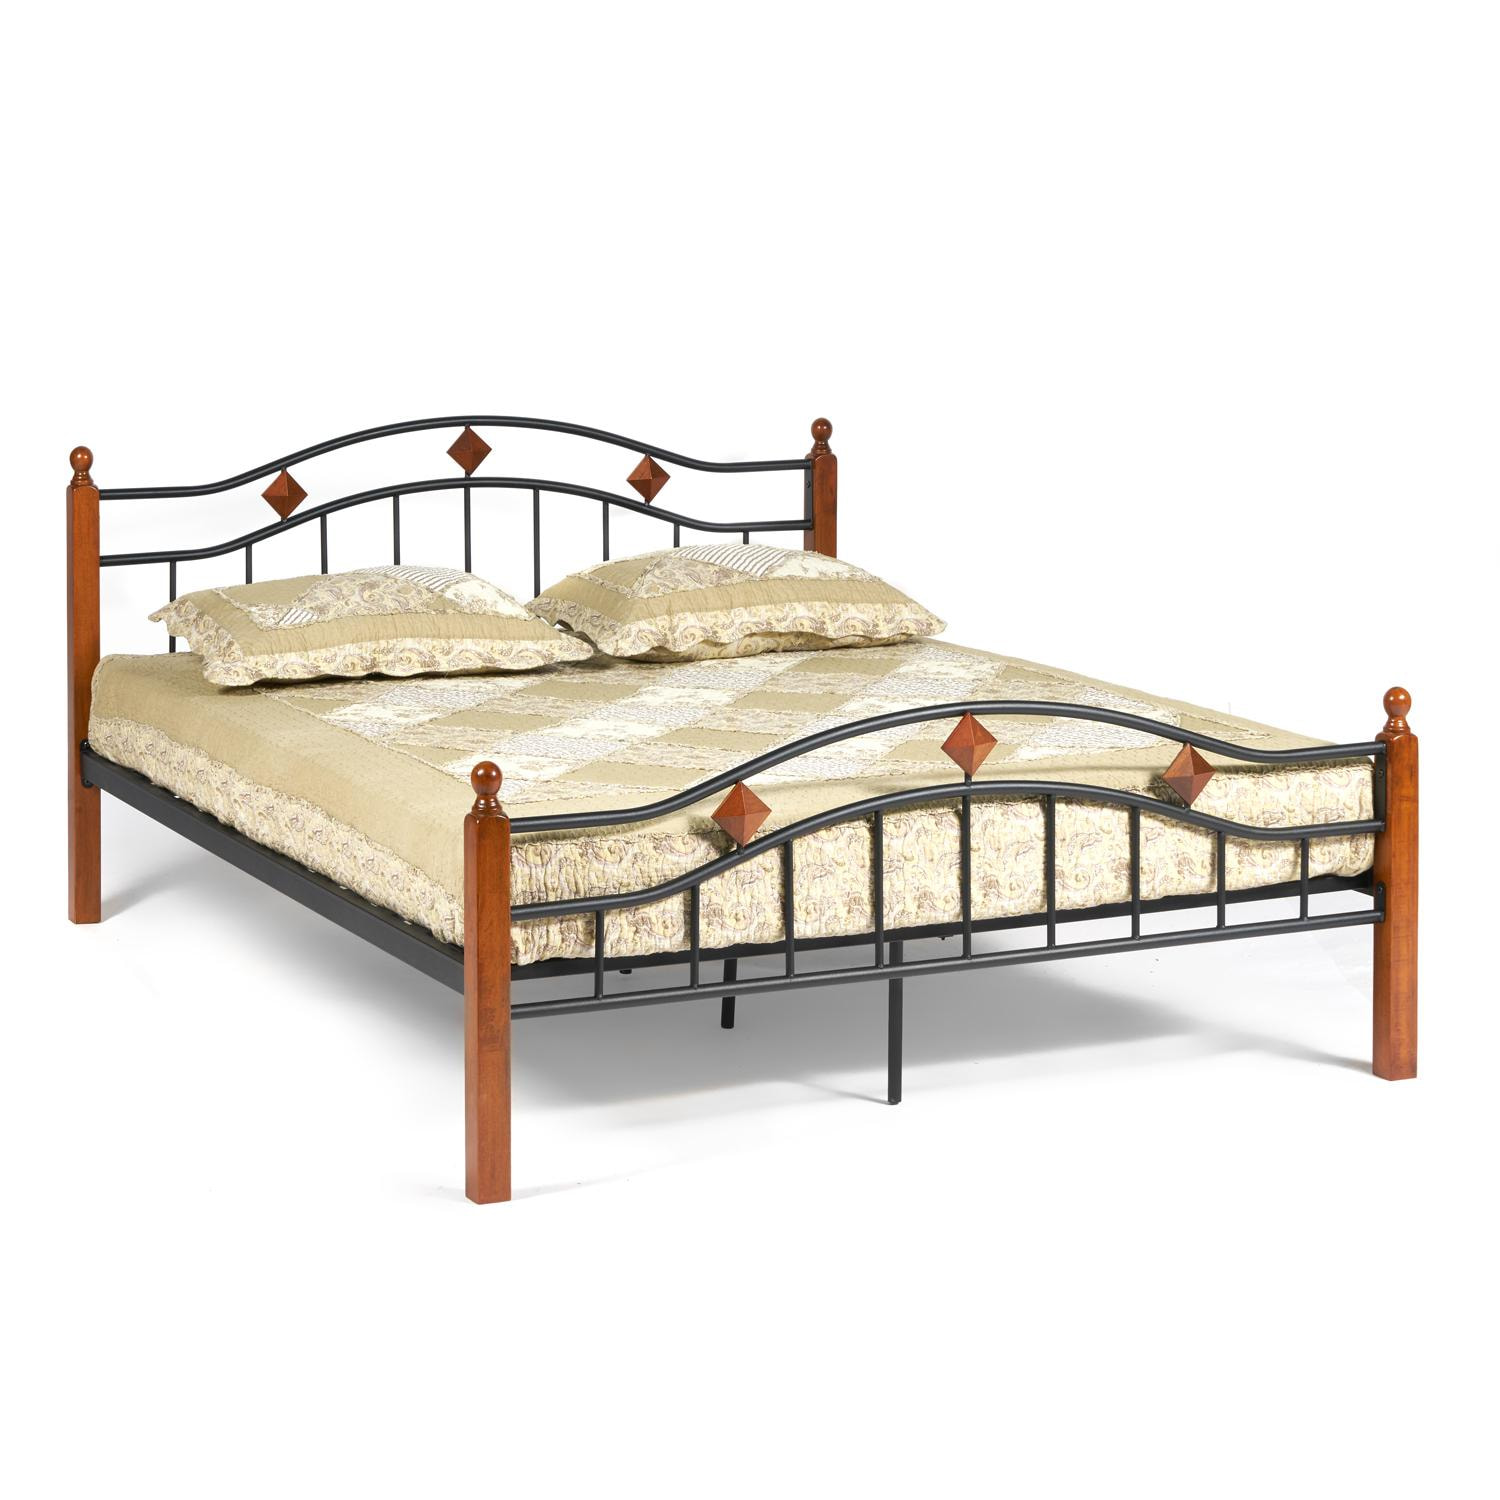 Кровать AT-126 Wood slat base дерево гевея/металл, 160*200 см (Queen bed), красный дуб/черный